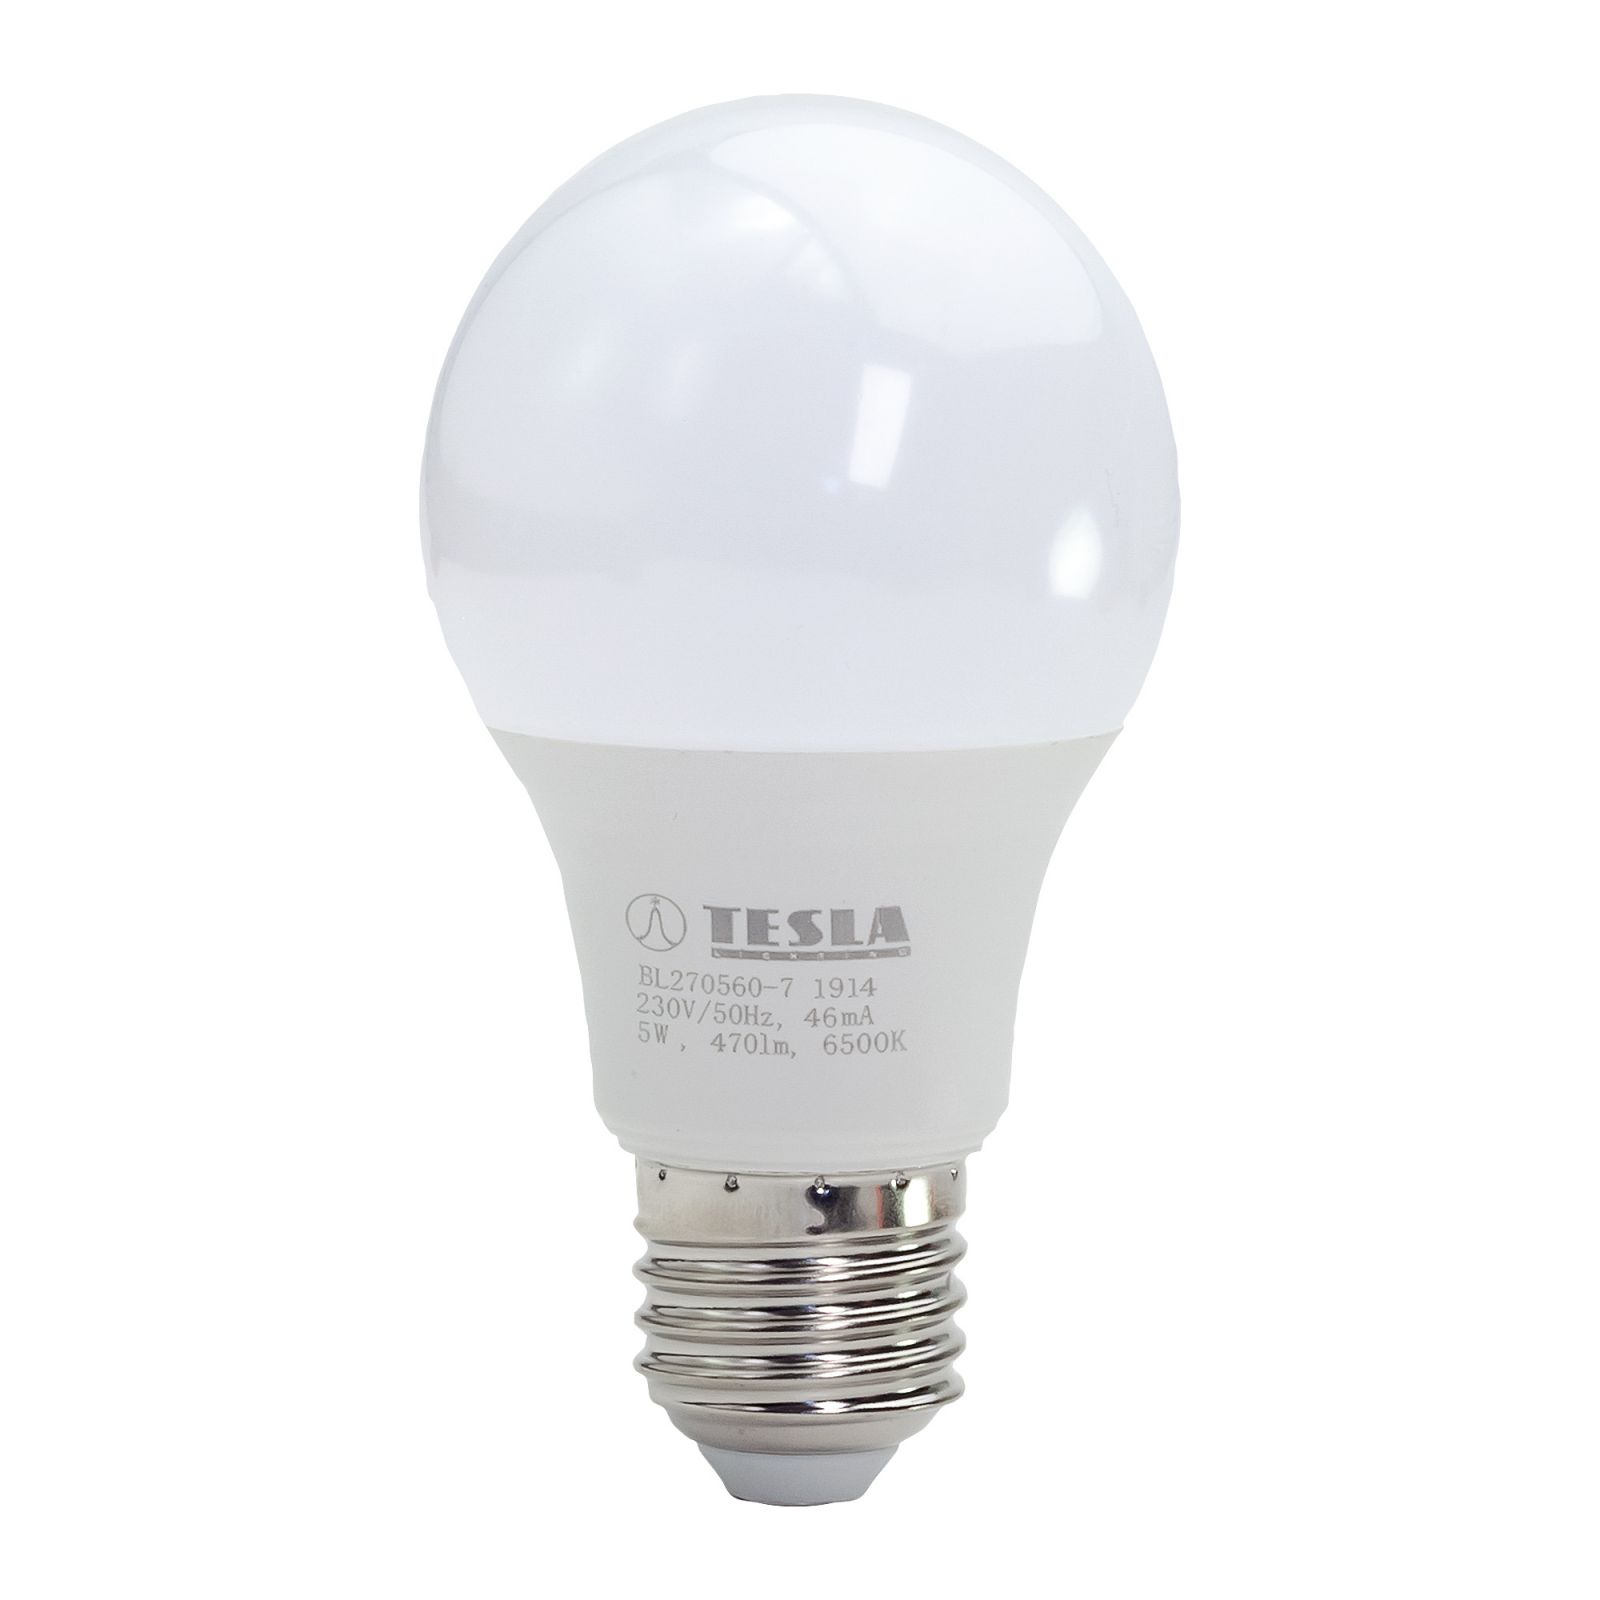 Tesla - LED BULB E27, 5W, 230V, 470lm, 6500K, 220° Tesla Lighting